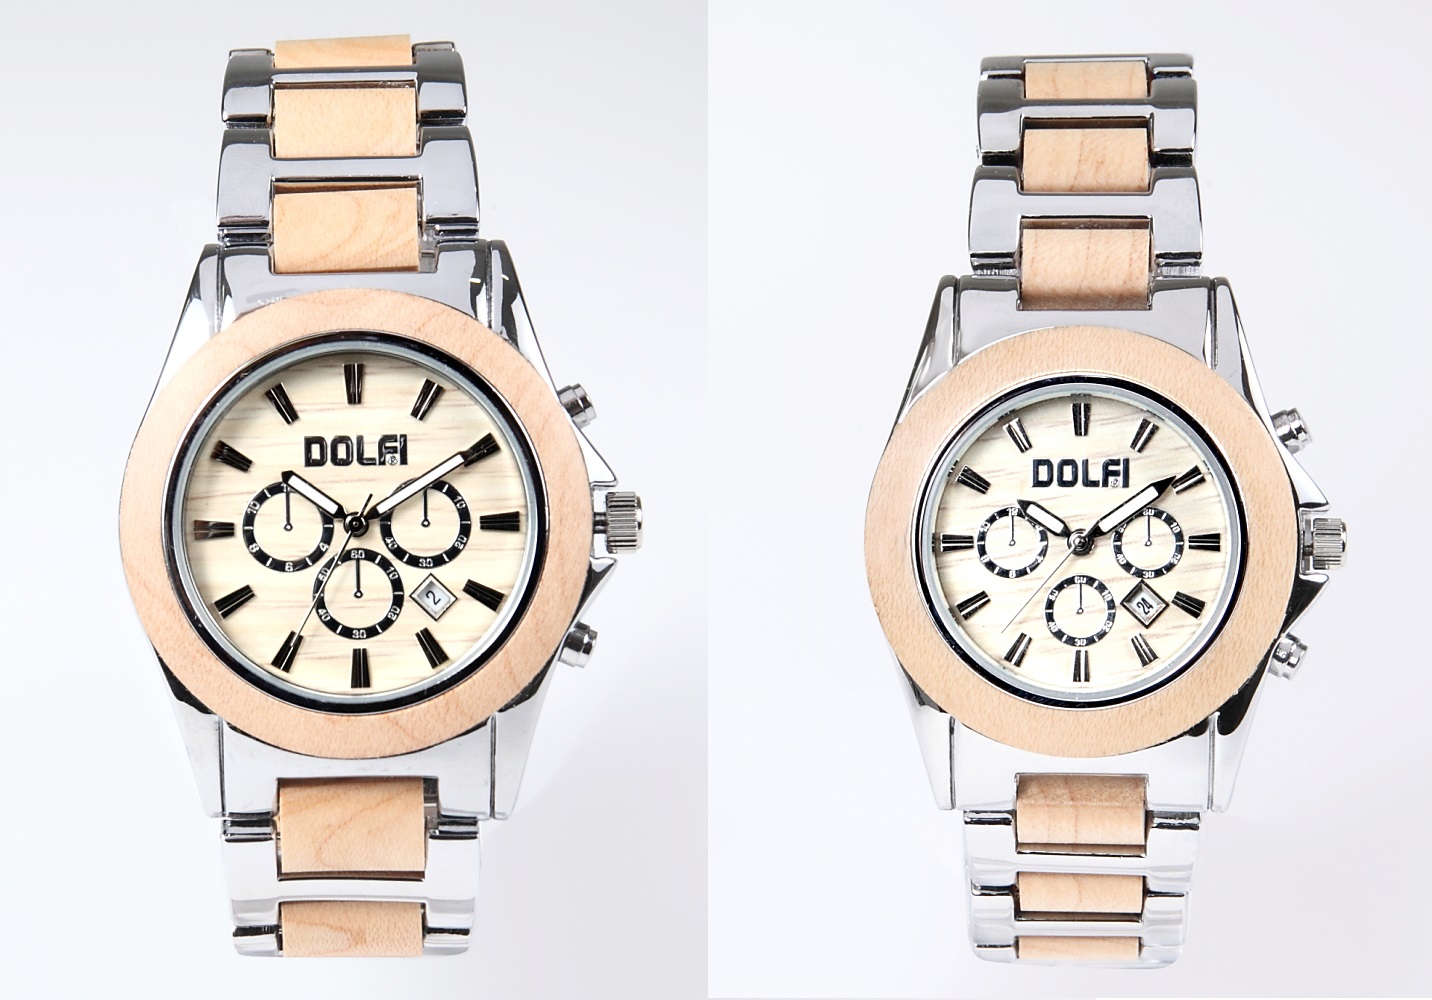 イタリア製 無垢の天然木と国産ムーブメントの腕時計「Dolfi」 - 株式会社グランストック